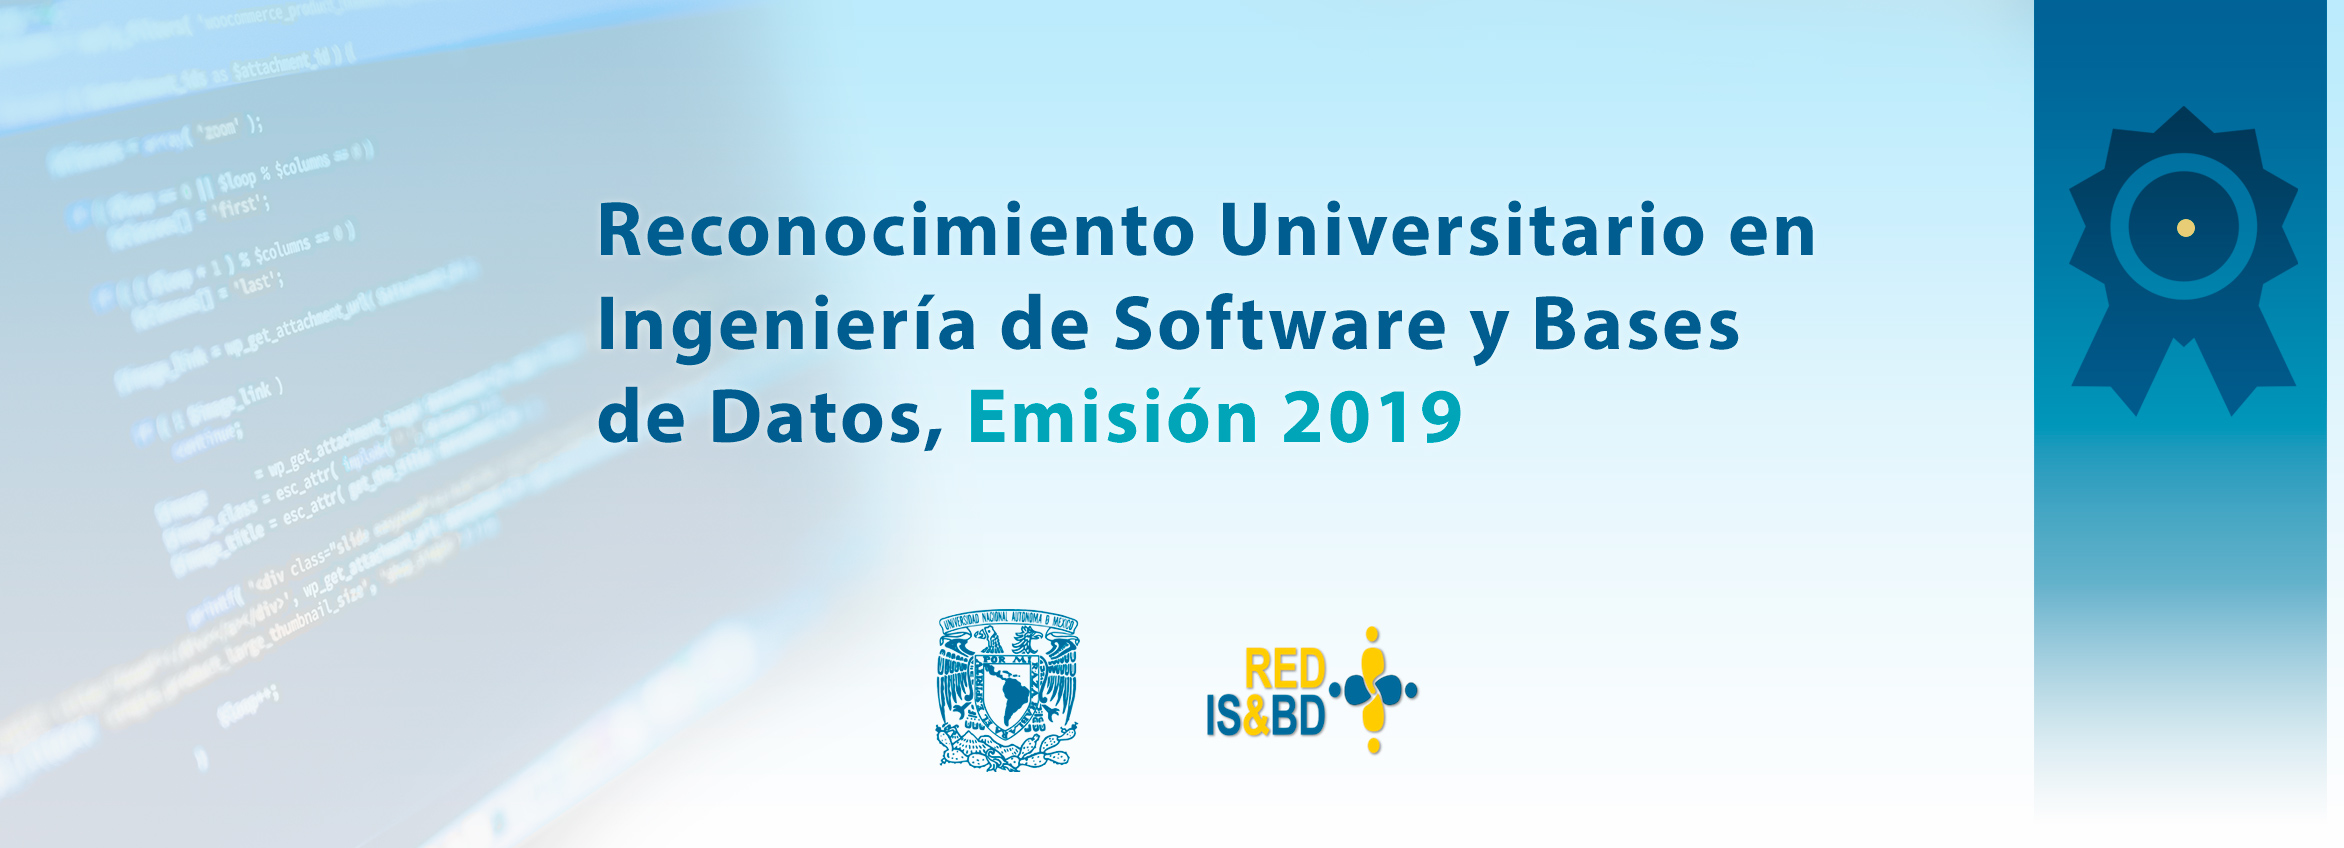 Reconocimiento Universitario en Ingeniería de Software y Bases de Datos, Emisión 2019